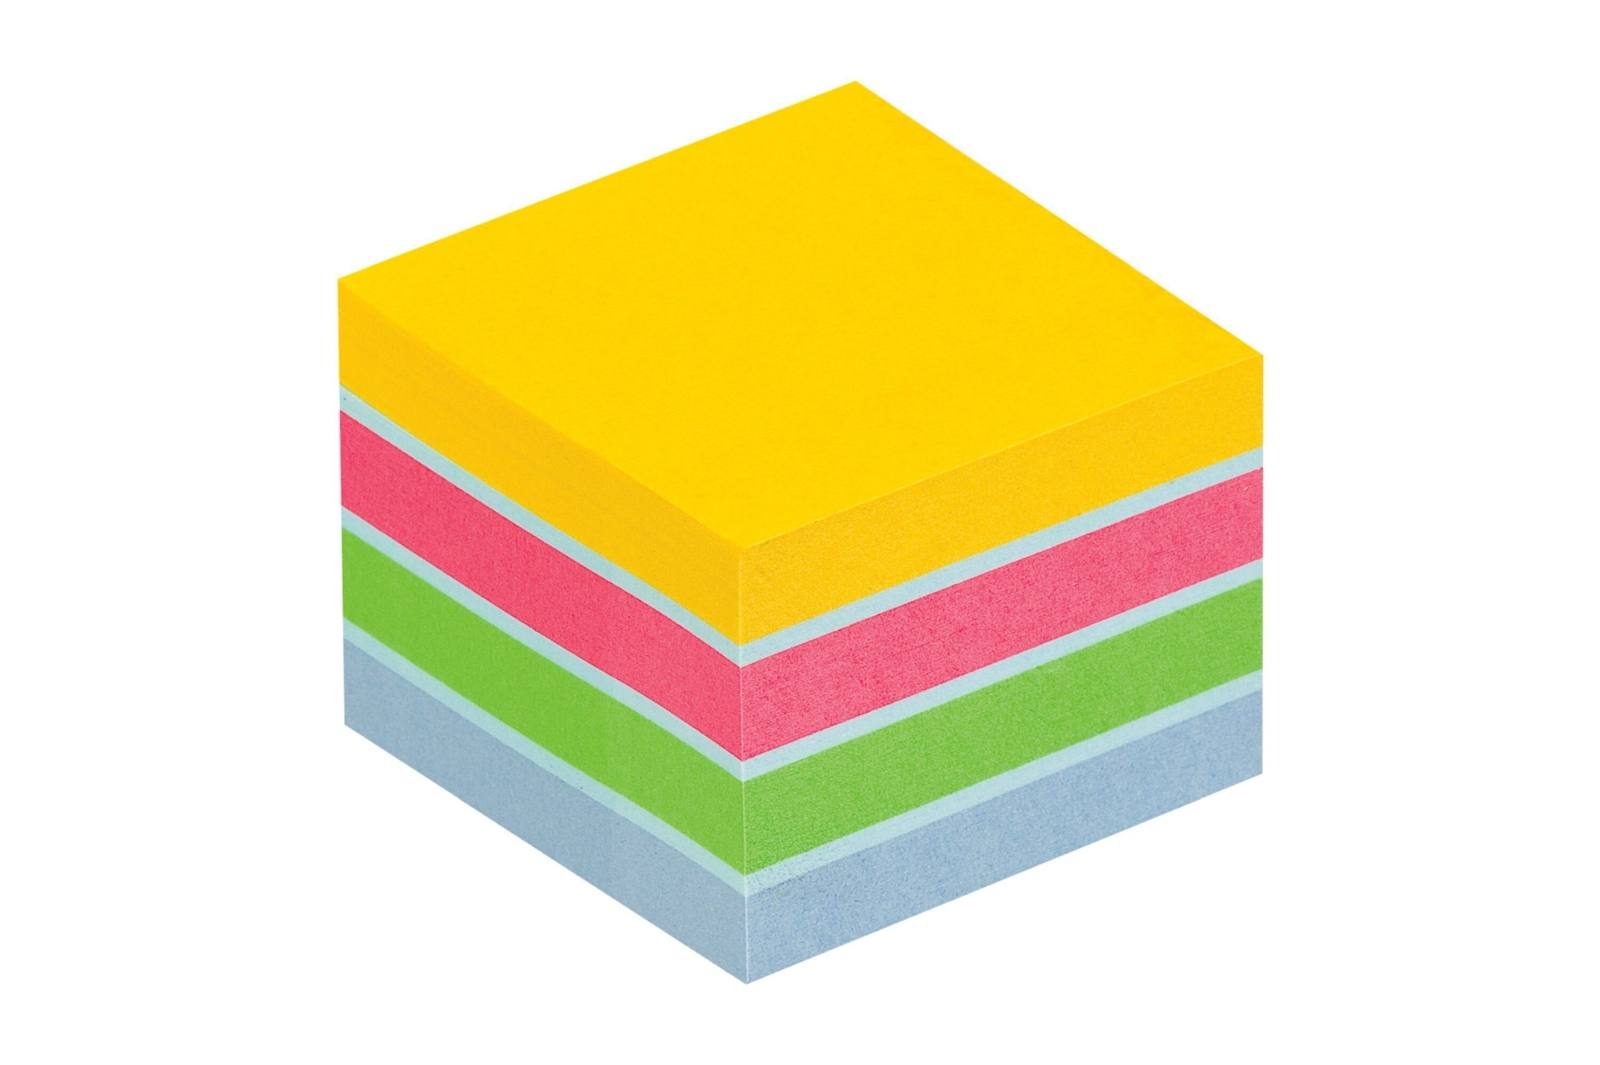 3M Post-it Mini cubo 2051-U, 51 mm x 51 mm, ultra azul, ultra amarillo, ultra verde, ultra rosa, 1 cubo con 400 hojas cada uno